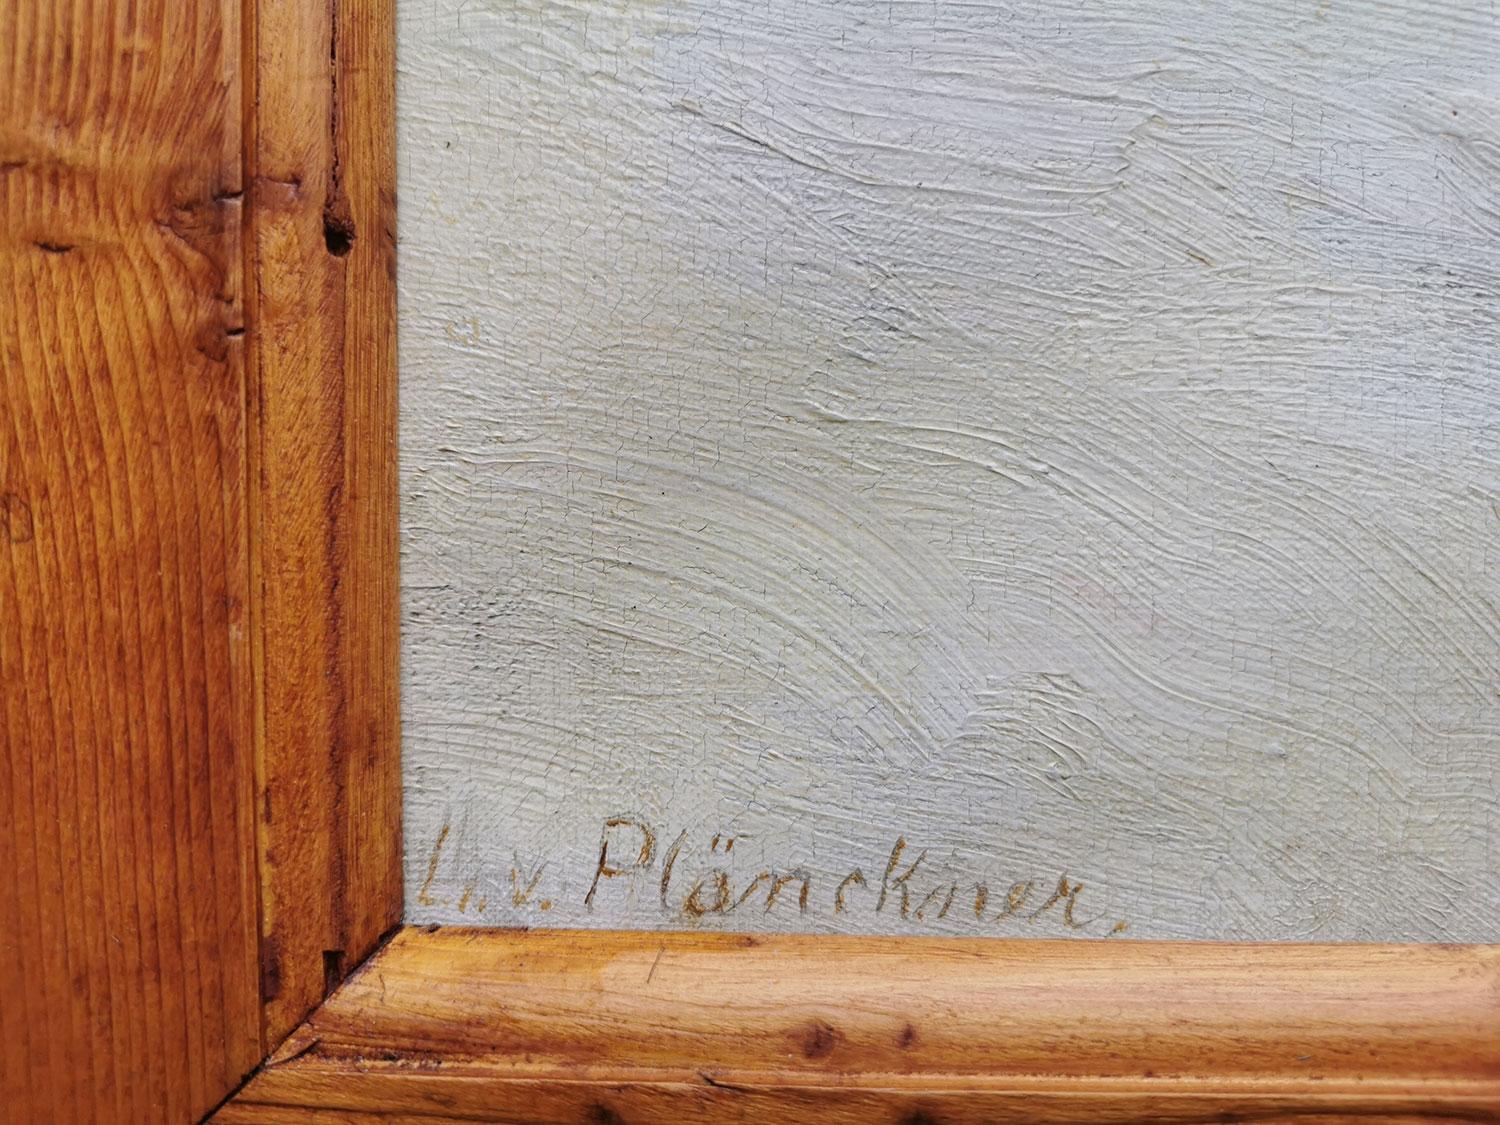 Tableau de paysage enneigé italien - Lonny von Plänckner (1863-1925)

Mesures : 50 x 65 cm - sans cadre
68 x 79 cm - avec cadre
début des années 1900
Peinture à l'huile sur toile, signée en bas à gauche.

Vue hivernale de la Valbelluna, dans